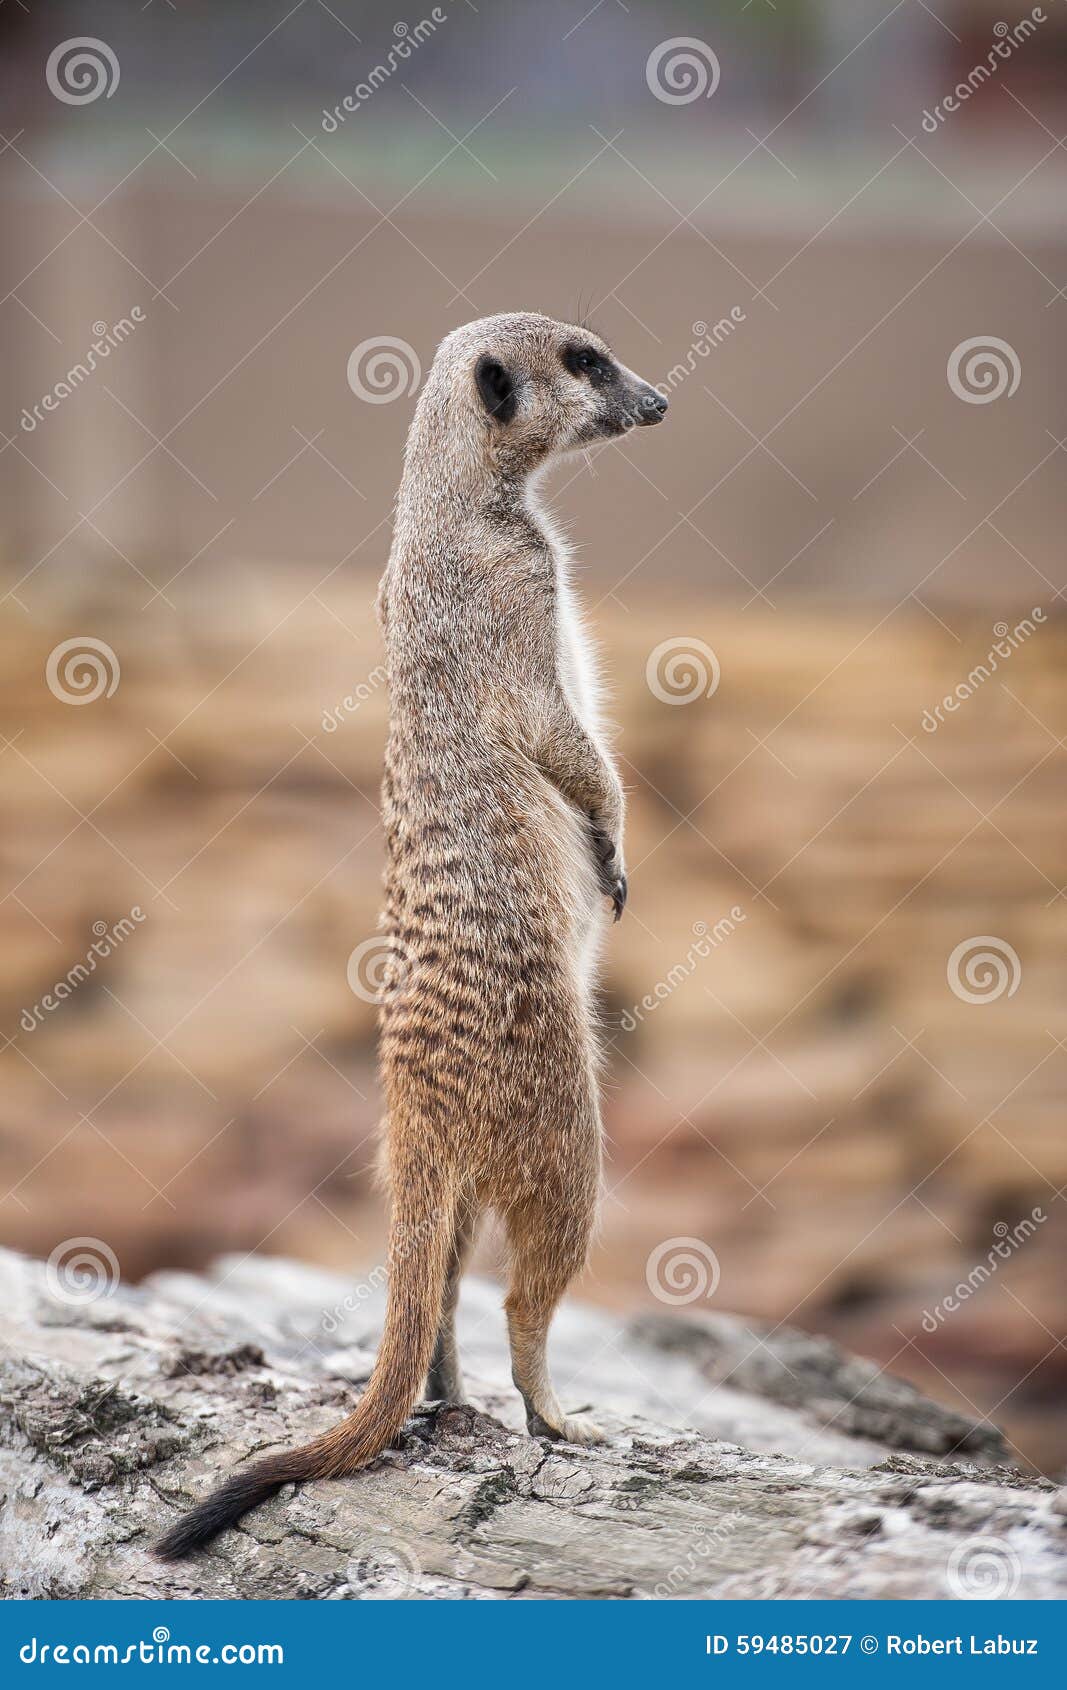 meerkat - suricata suricatta